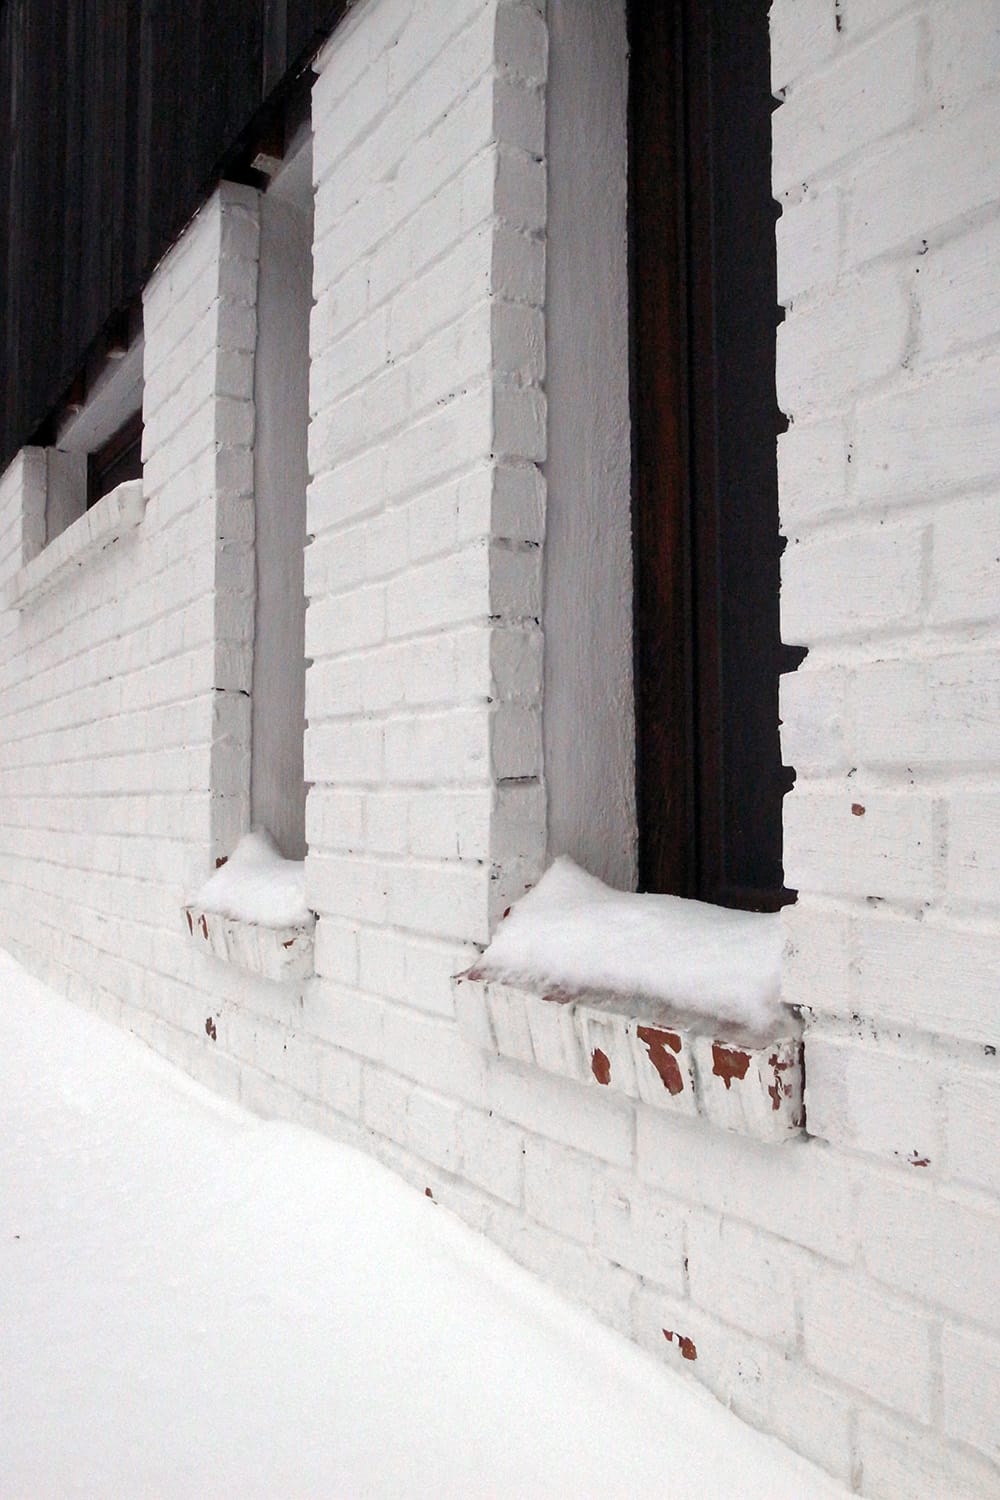 積もる雪と白いレンガの壁1